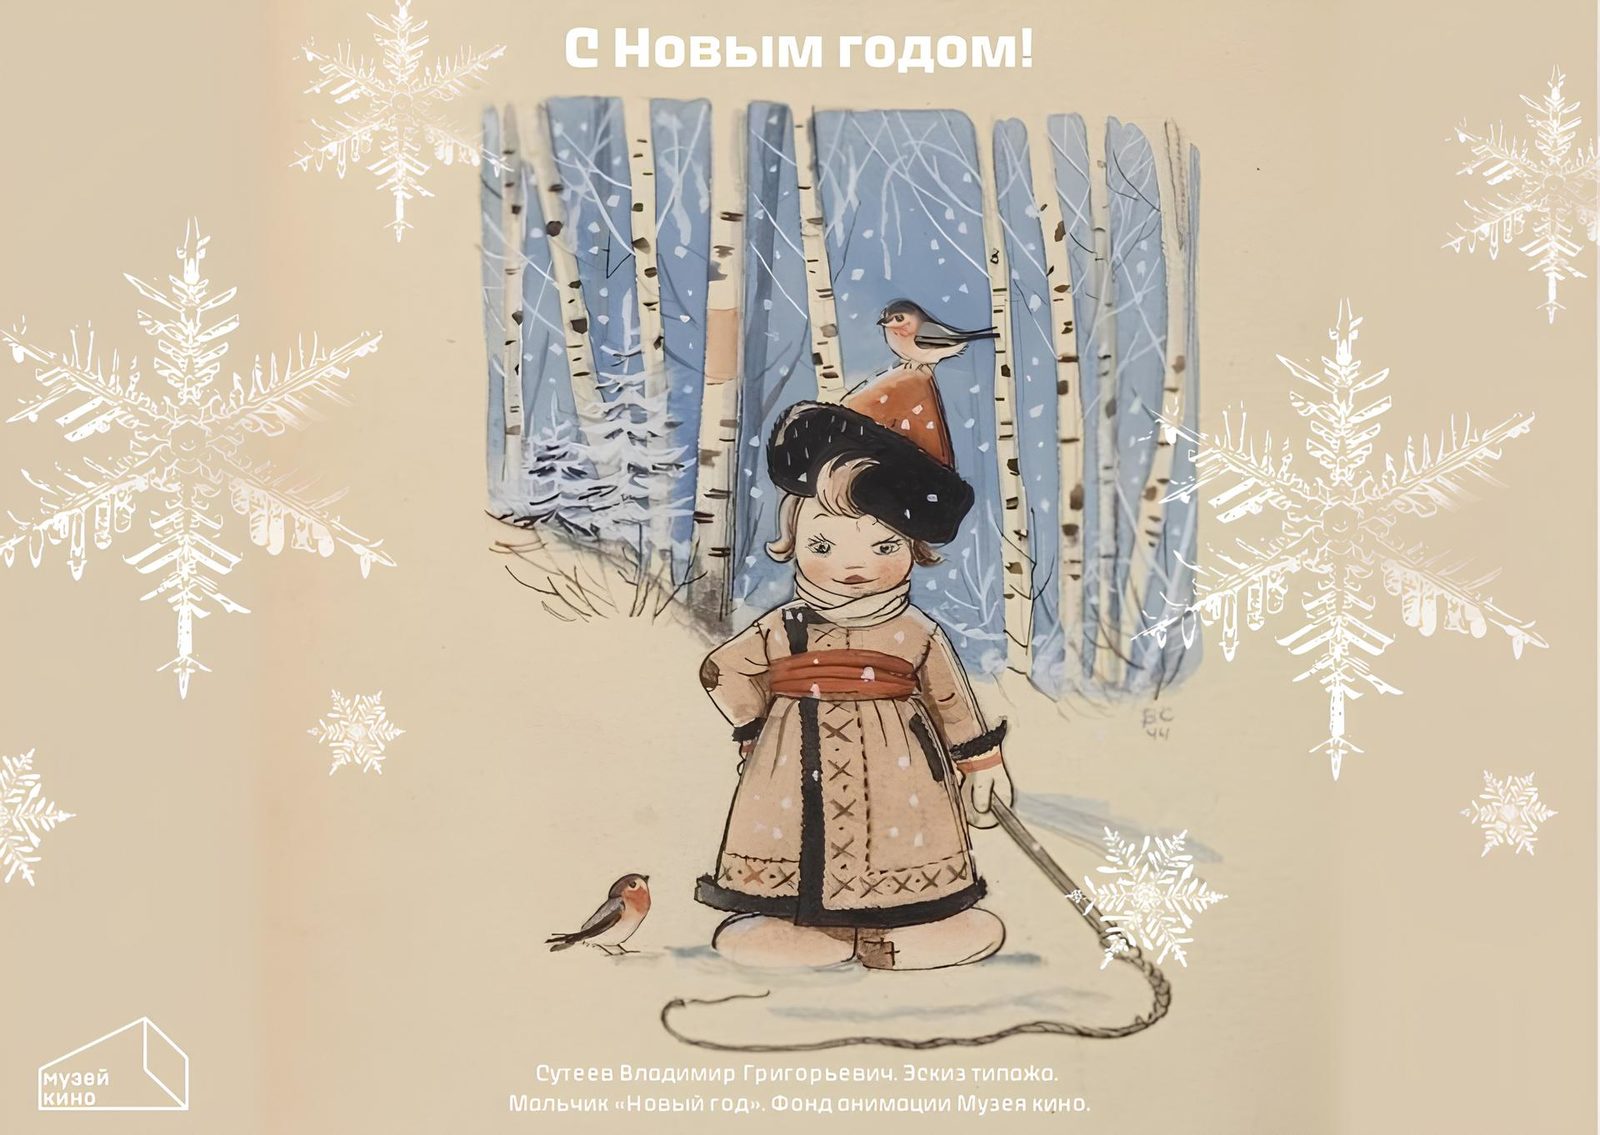 Музей кино в праздники бесплатно покажет комедии Леонида Гайдая и новогодние мультфильмы